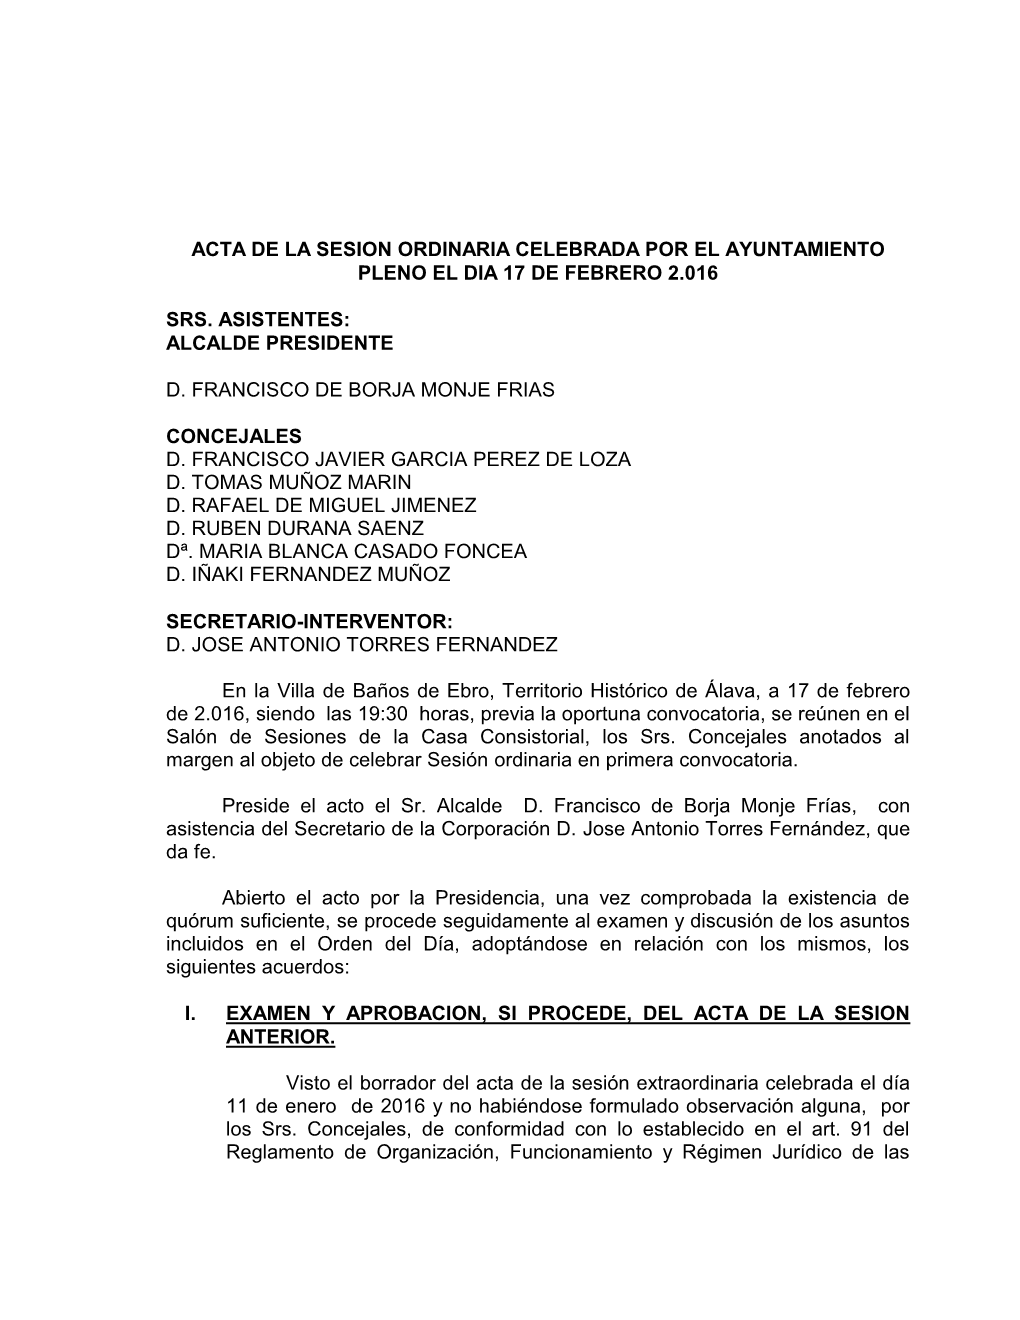 Acta De La Sesion Ordinaria Celebrada Por El Ayuntamiento Pleno El Dia 17 De Febrero 2.016